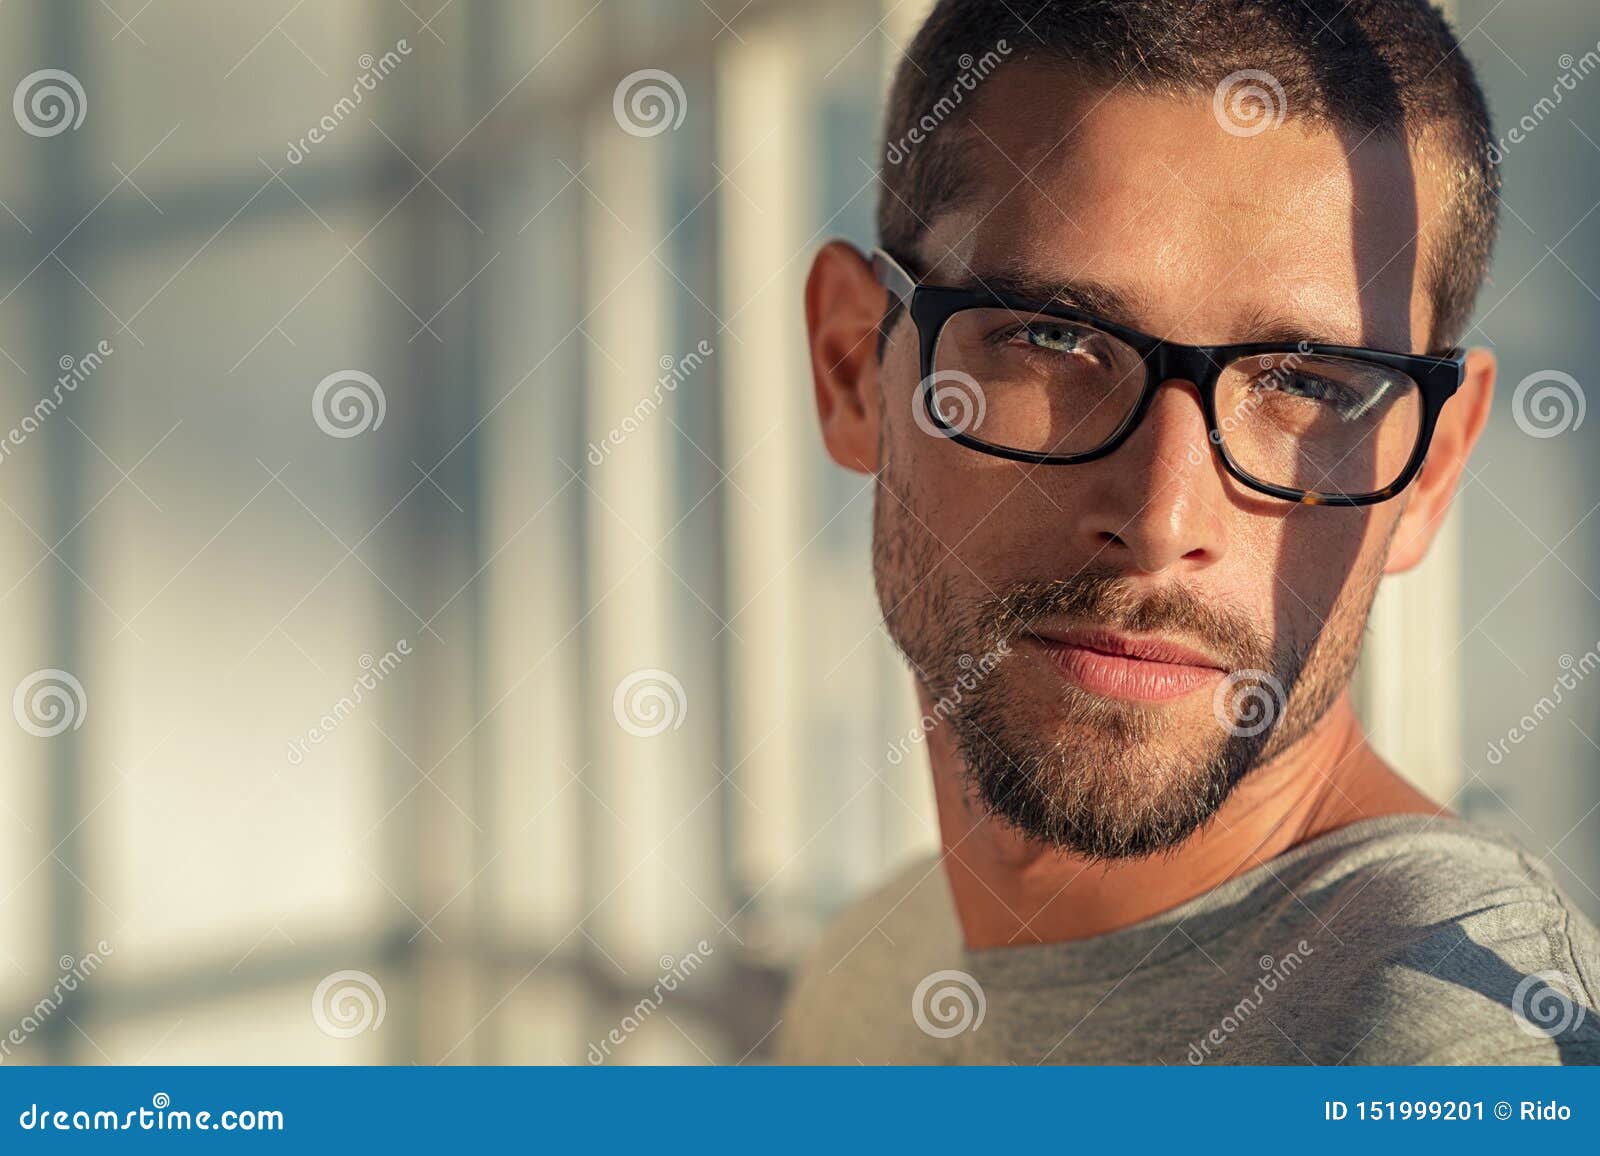 cool man wearing eyeglasses